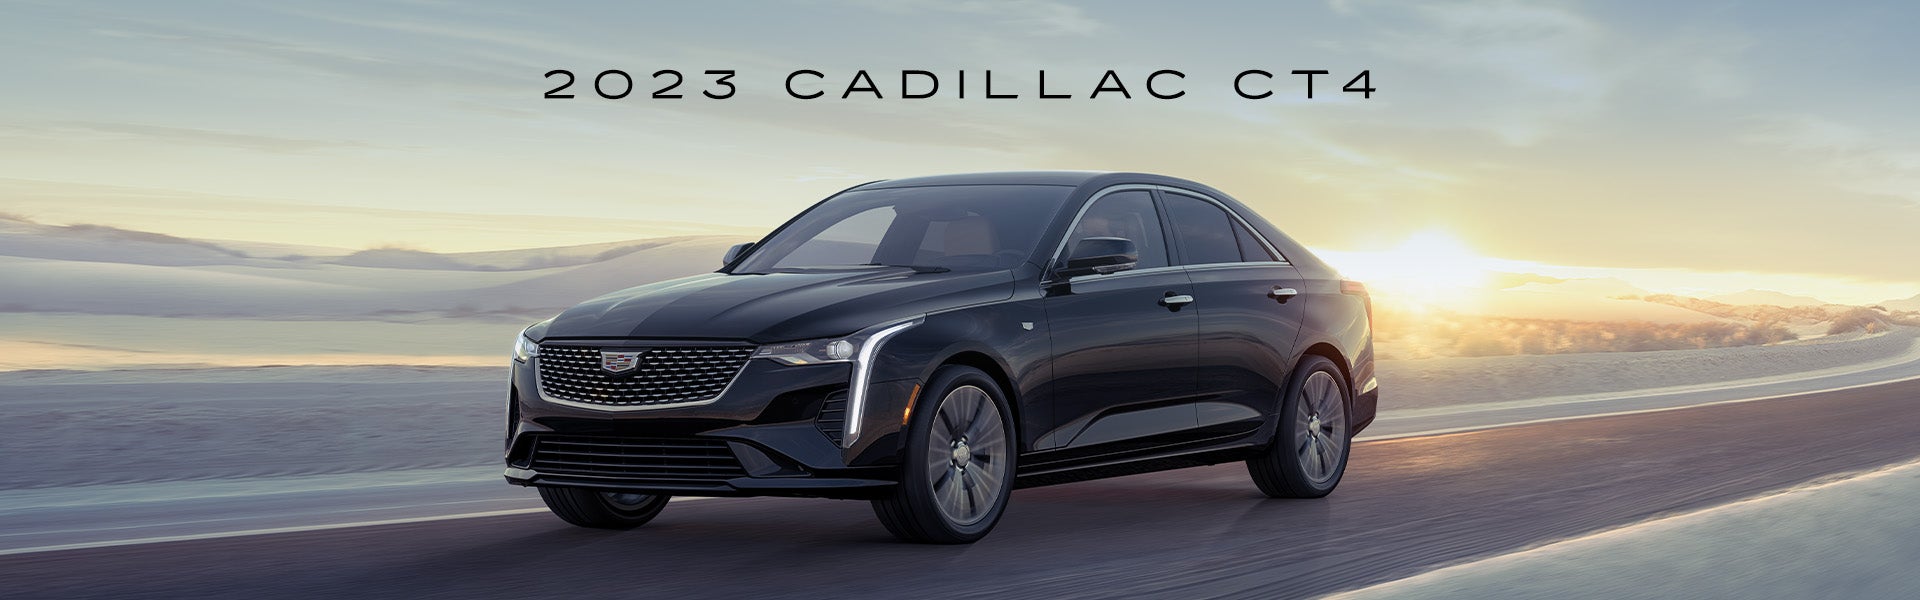 2023 Cadillac CT4 at Swickard Cadillac of Thousand Oaks